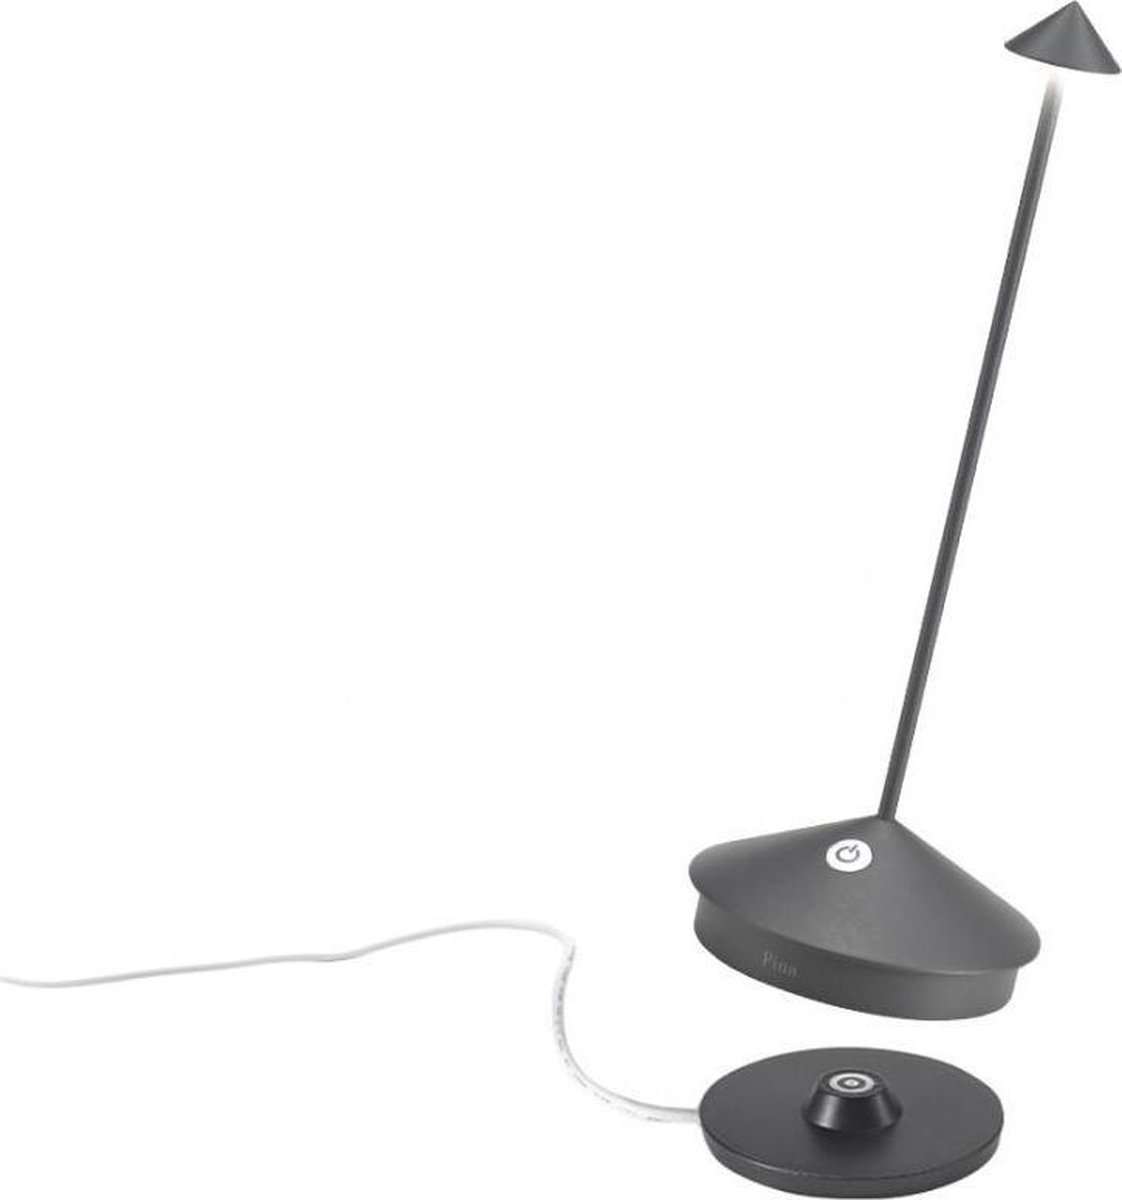 Zafferano - Pina - Donker Grijs - H29cm - Ledlamp - Bureaulamp – Tafellamp – Snoerloos – Verplaatsbaar – Duurzaam - Voor binnen en buiten – LED - Dimbaar - 2700K – IP54 Spat Waterdicht - USB oplaadbaar